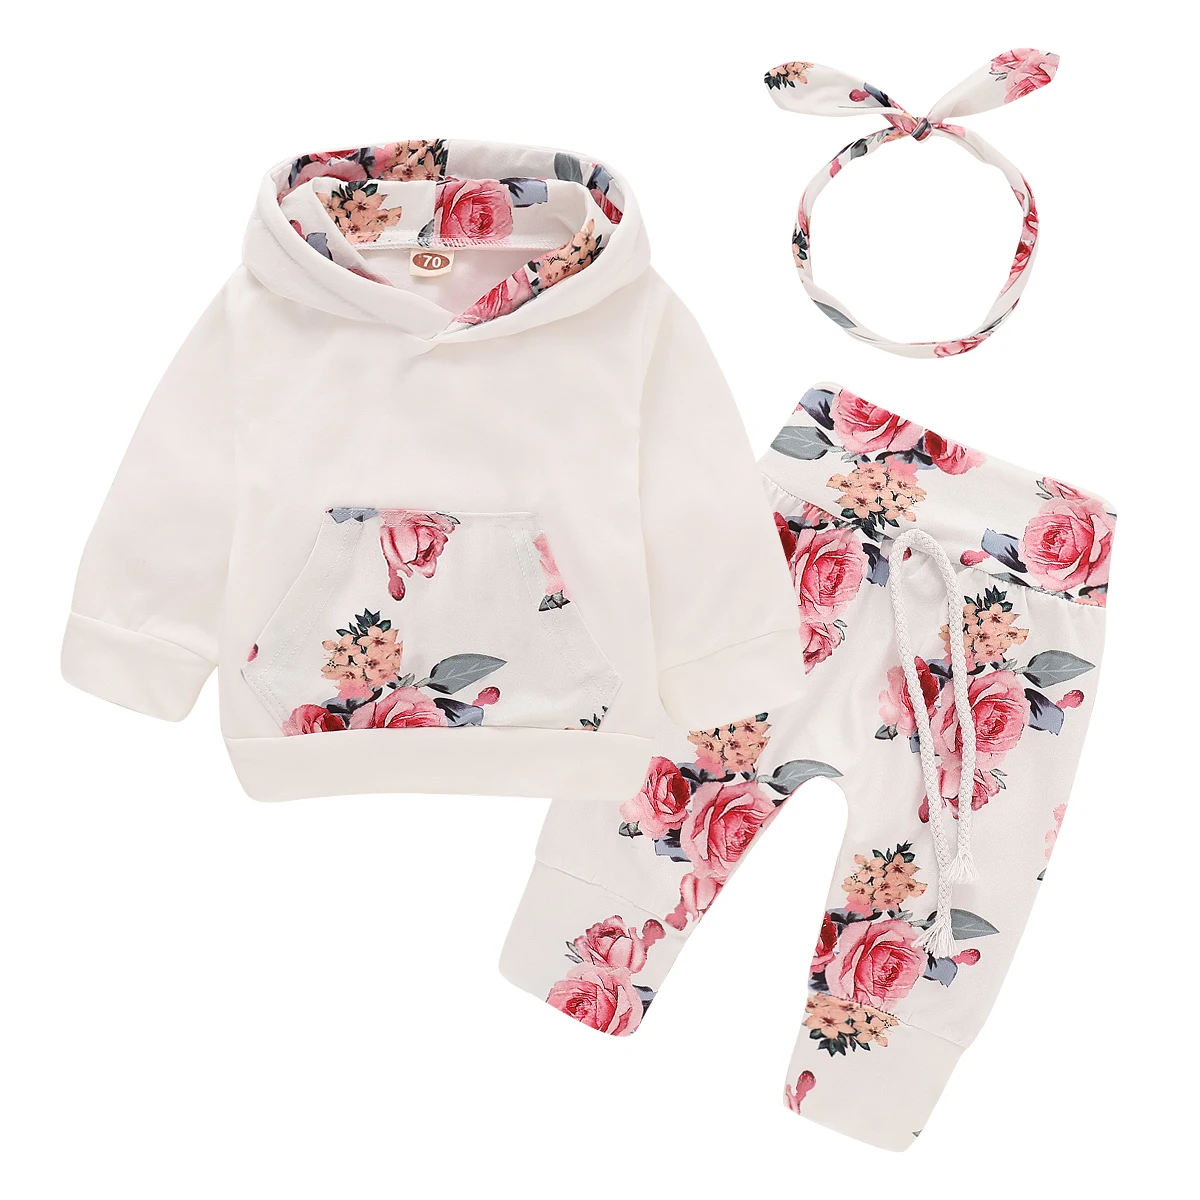 Одежда для новорожденных 3-18 месяцев, комплект одежды для маленьких девочек из 3 предметов: белый топ+ брюки с розами+ повязка на голову, Осенний Детский Комплект Carters для девочек, цветочный принт, D30